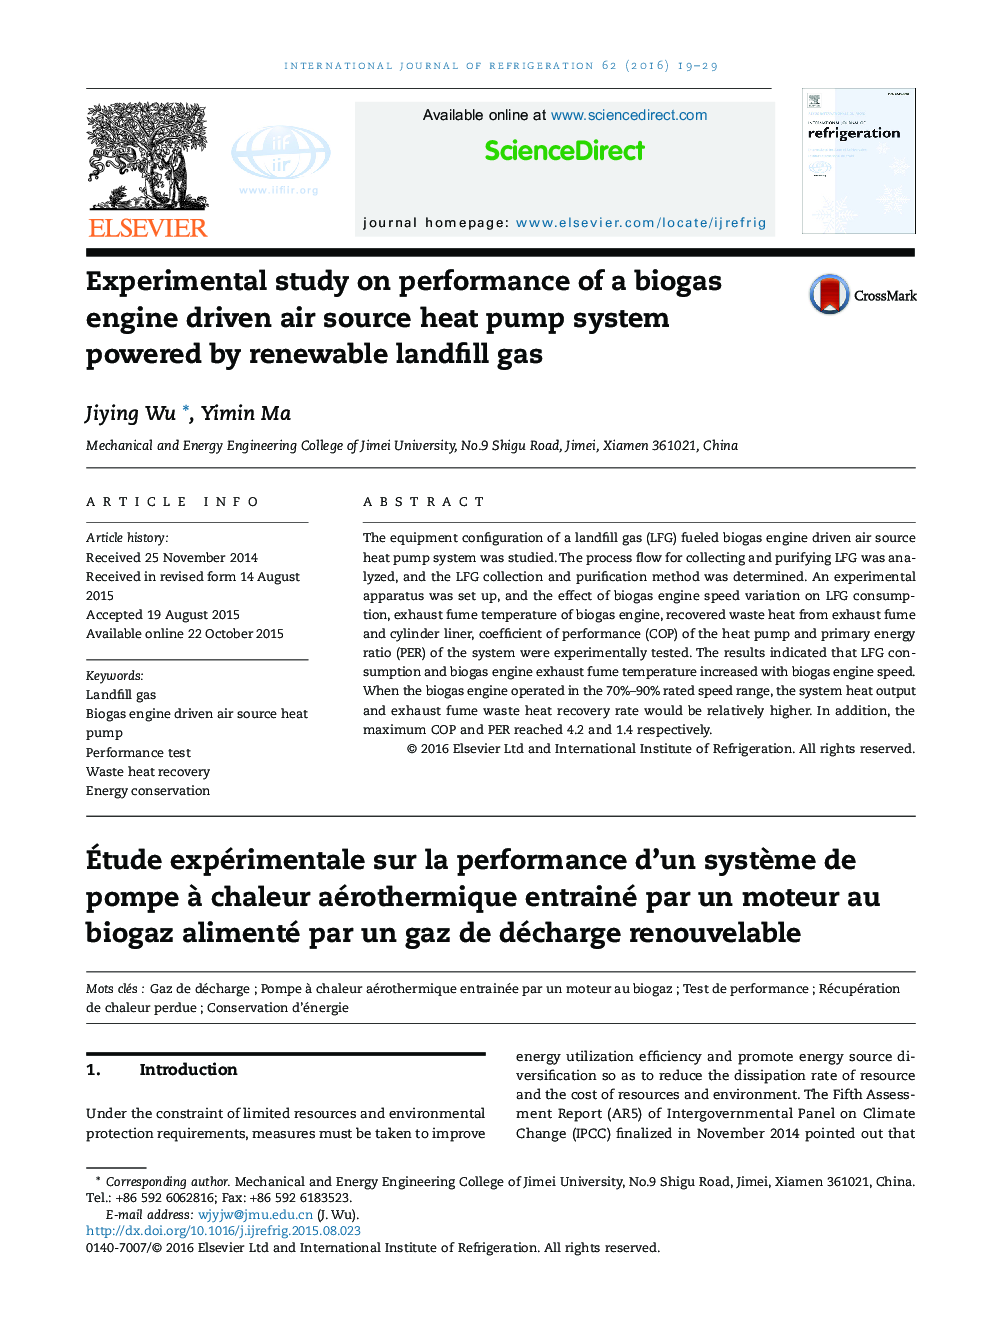 بررسی تجربی بر عملکرد یک سیستم پمپ گرمای هوا که بر پایه موتور بیوگاز کار می کند و توسط گازهای تجدید پذیر ساخته شده است 